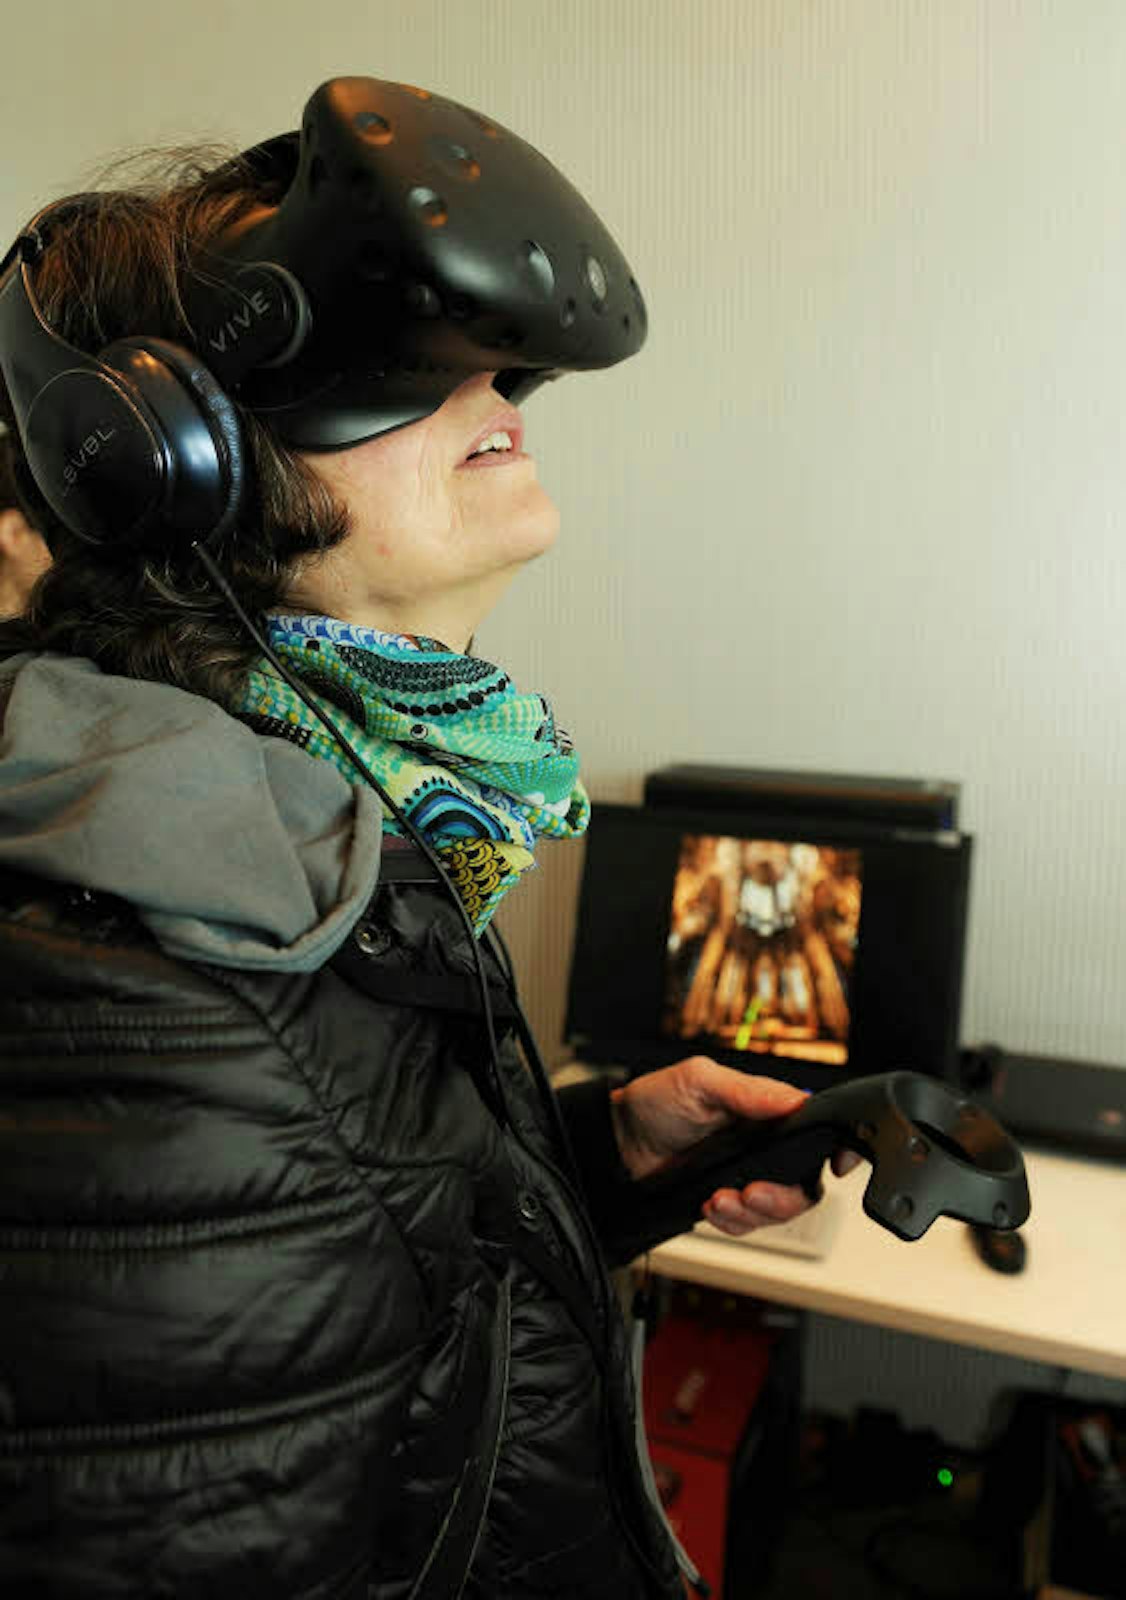 Mit der VR-Brille lässt sich das Bild, das auf dem Bildschirm im Hintergrund zu sehen ist, in 3D virtuell und interaktiv erkunden. Mit dem Joystick steuert man den Rundgang.